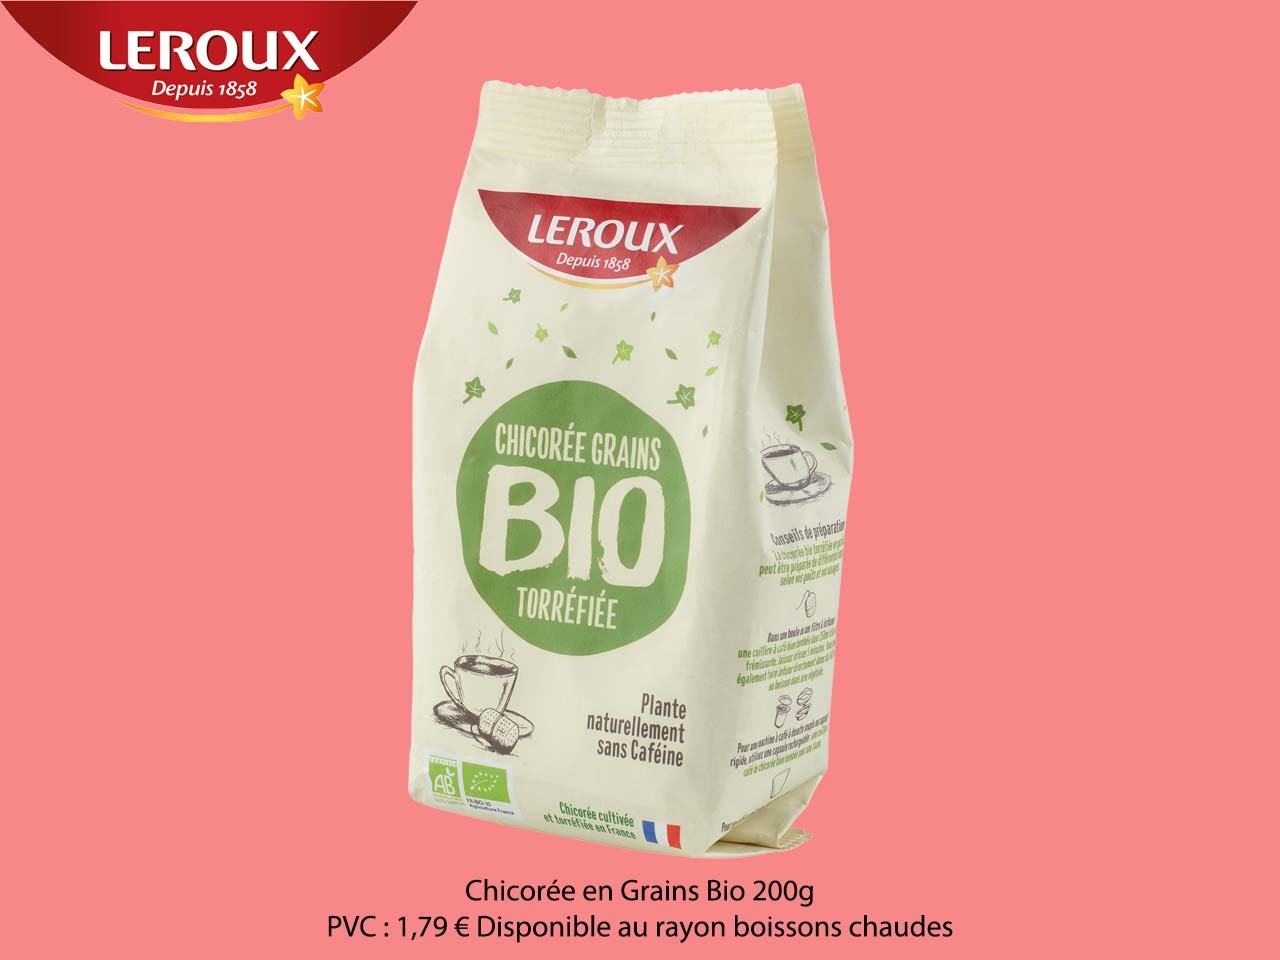 LEROUX lance la Chicorée en Grains Bio et renforce sa gamme bio